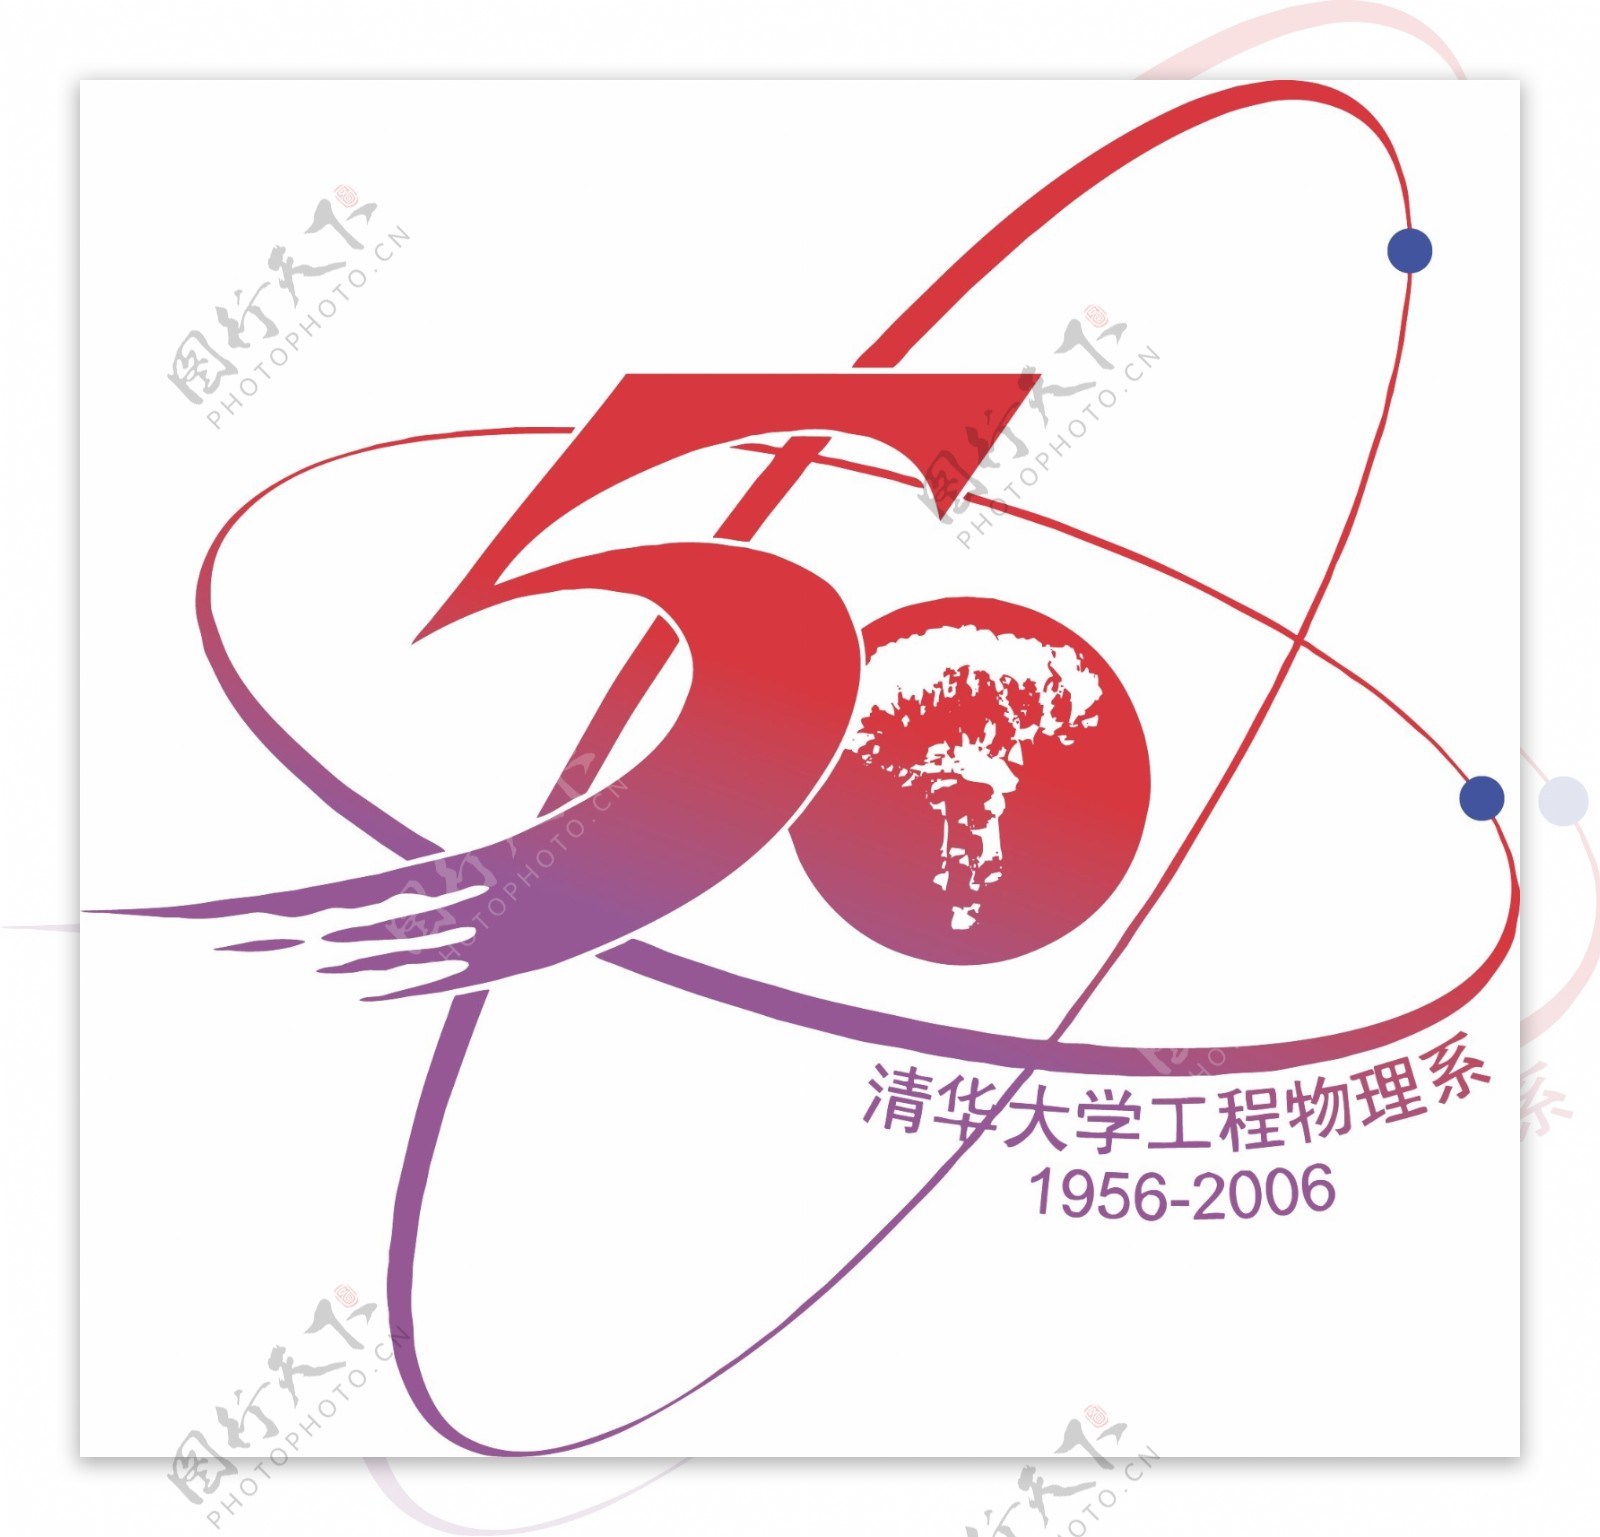 工程物理系建系50周年logo图片